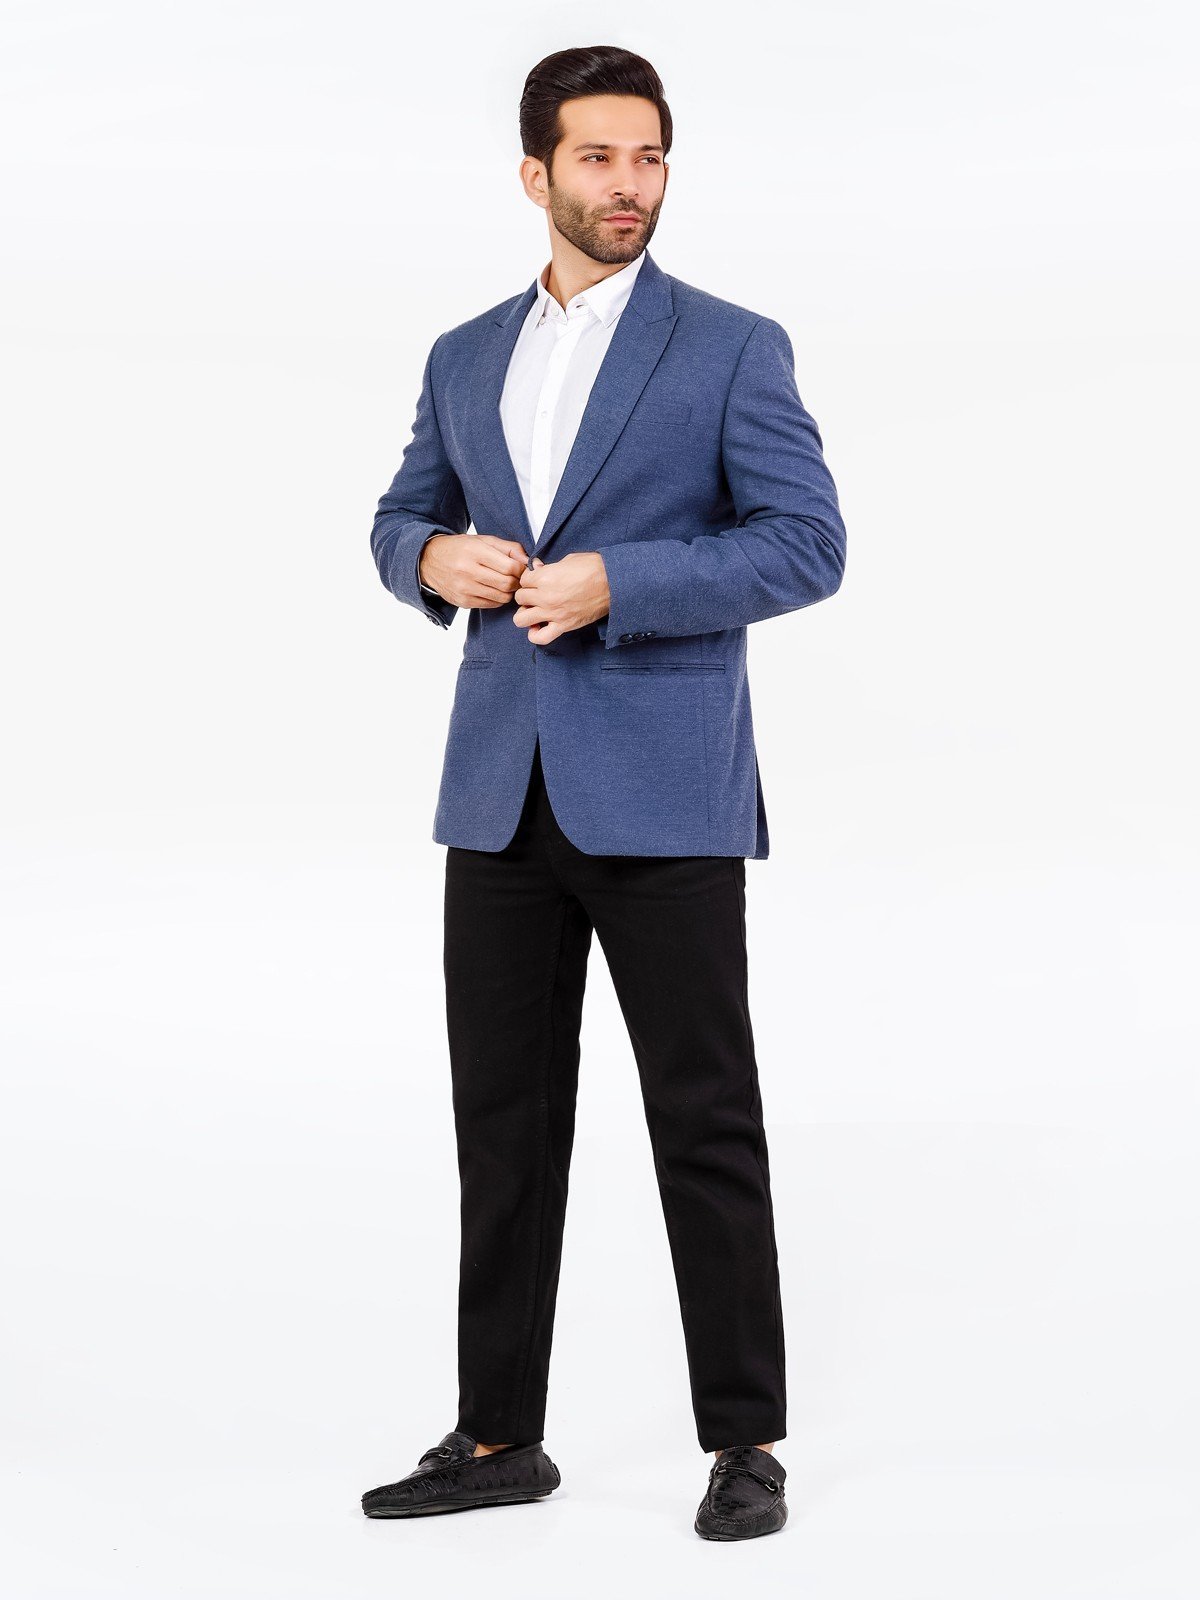 What To Wear With A Blue Blazer? – 35 Men's Blue Blazer Outfit Ideas | Blue  blazer outfit, Blue blazer outfit men, Dark blue blazer